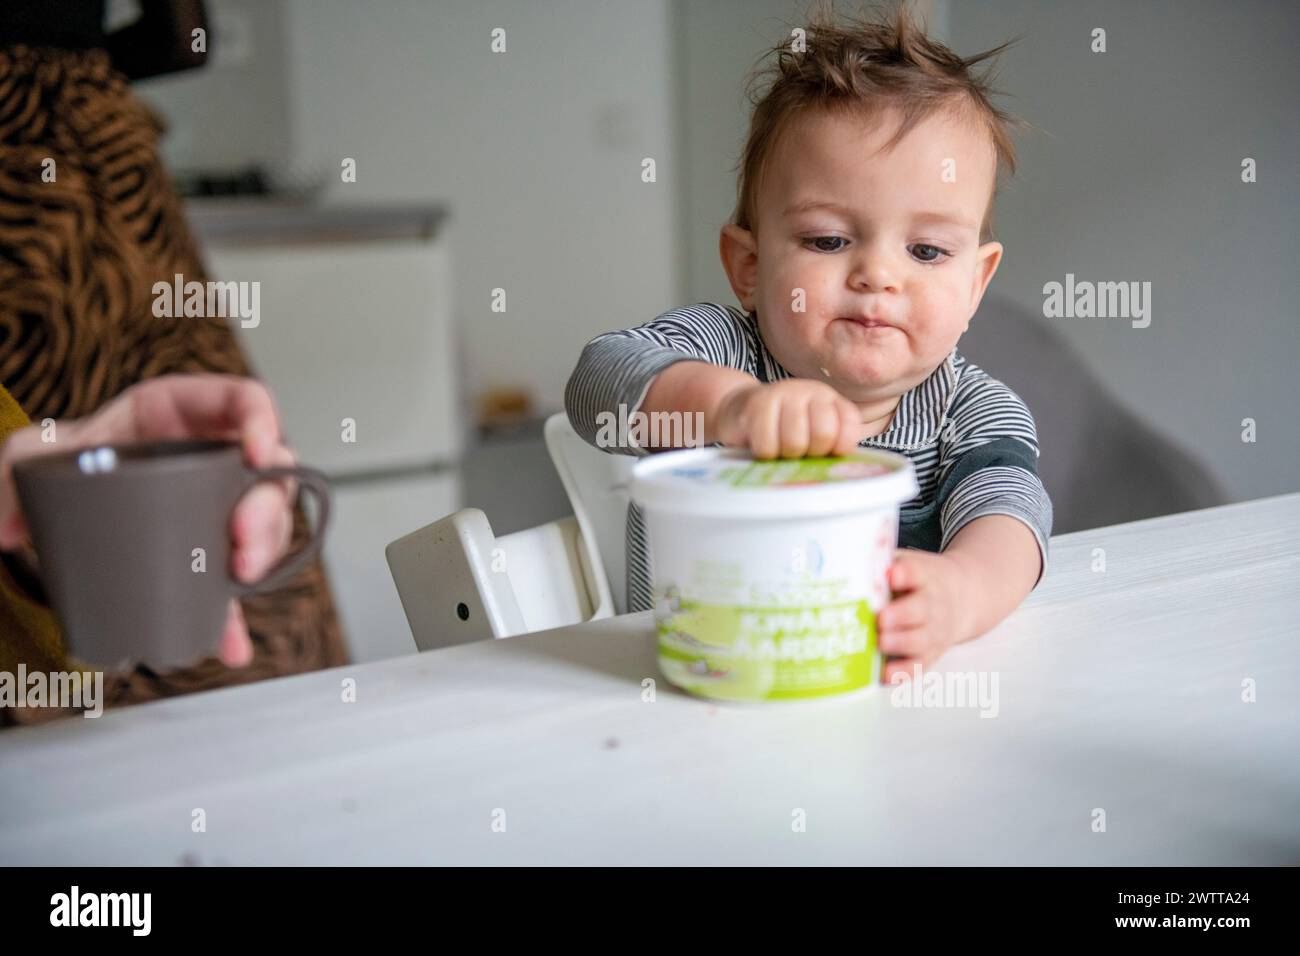 Neugieriges Kleinkind, das am Esstisch nach einem Joghurtbecher greift, während eine Erwachsene Hand ein Getränk in der Nähe hält. Stockfoto